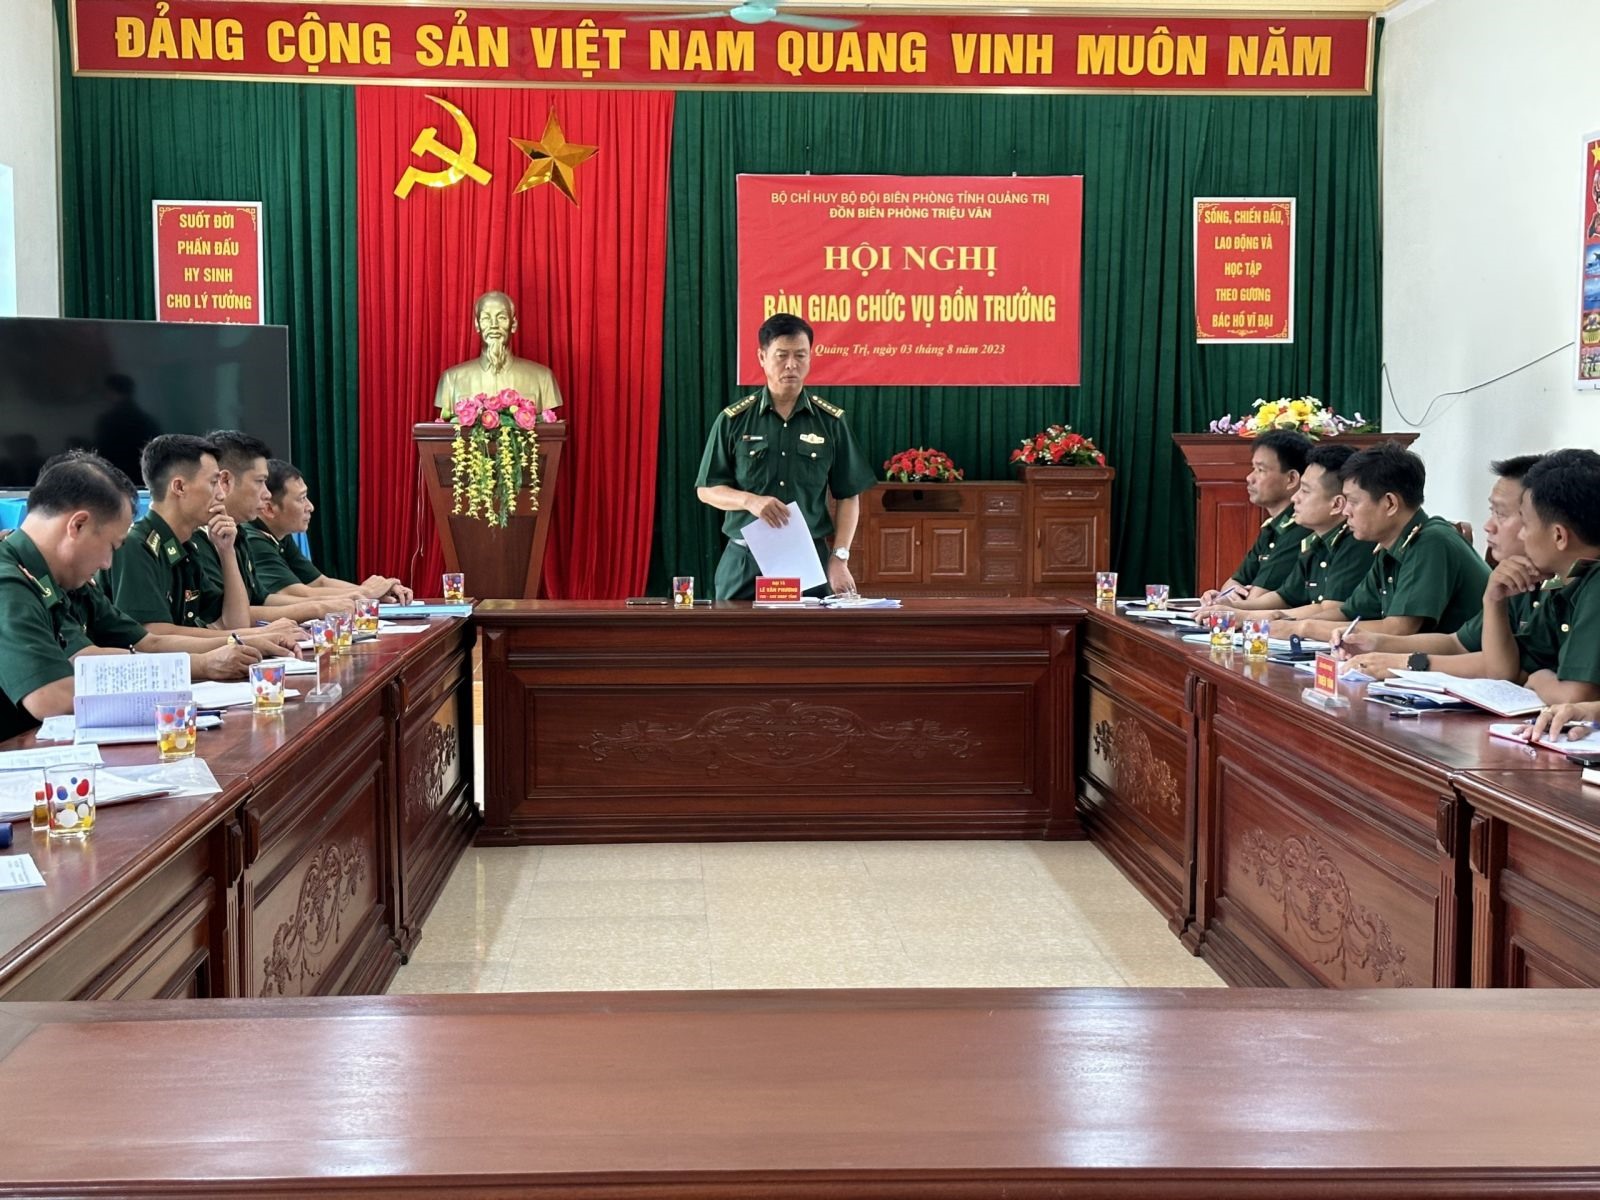 Đại tá Lê Văn Phương - TUV, Chỉ huy trưởng BĐBP tỉnh phát biểu giao nhiệm vụ.